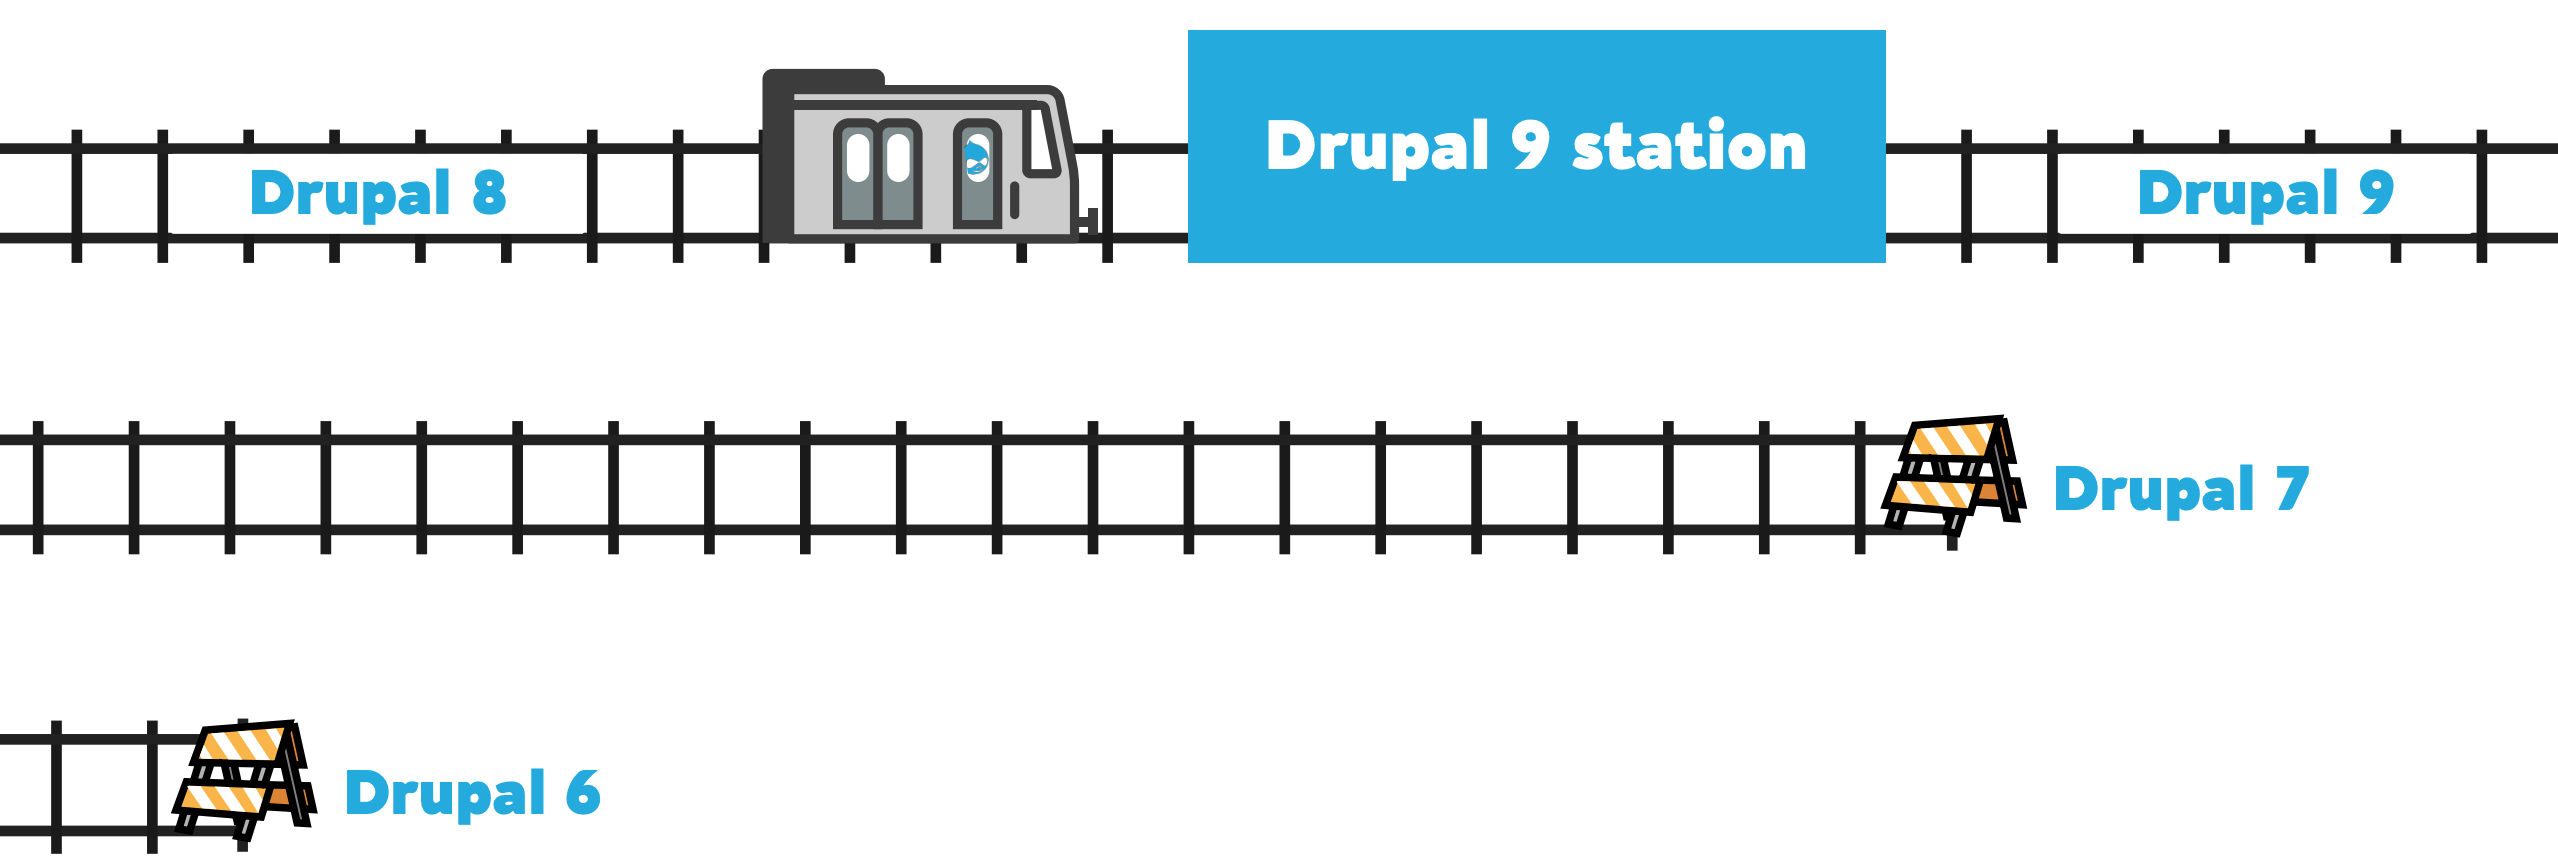 DrupalTrains-Drupal9